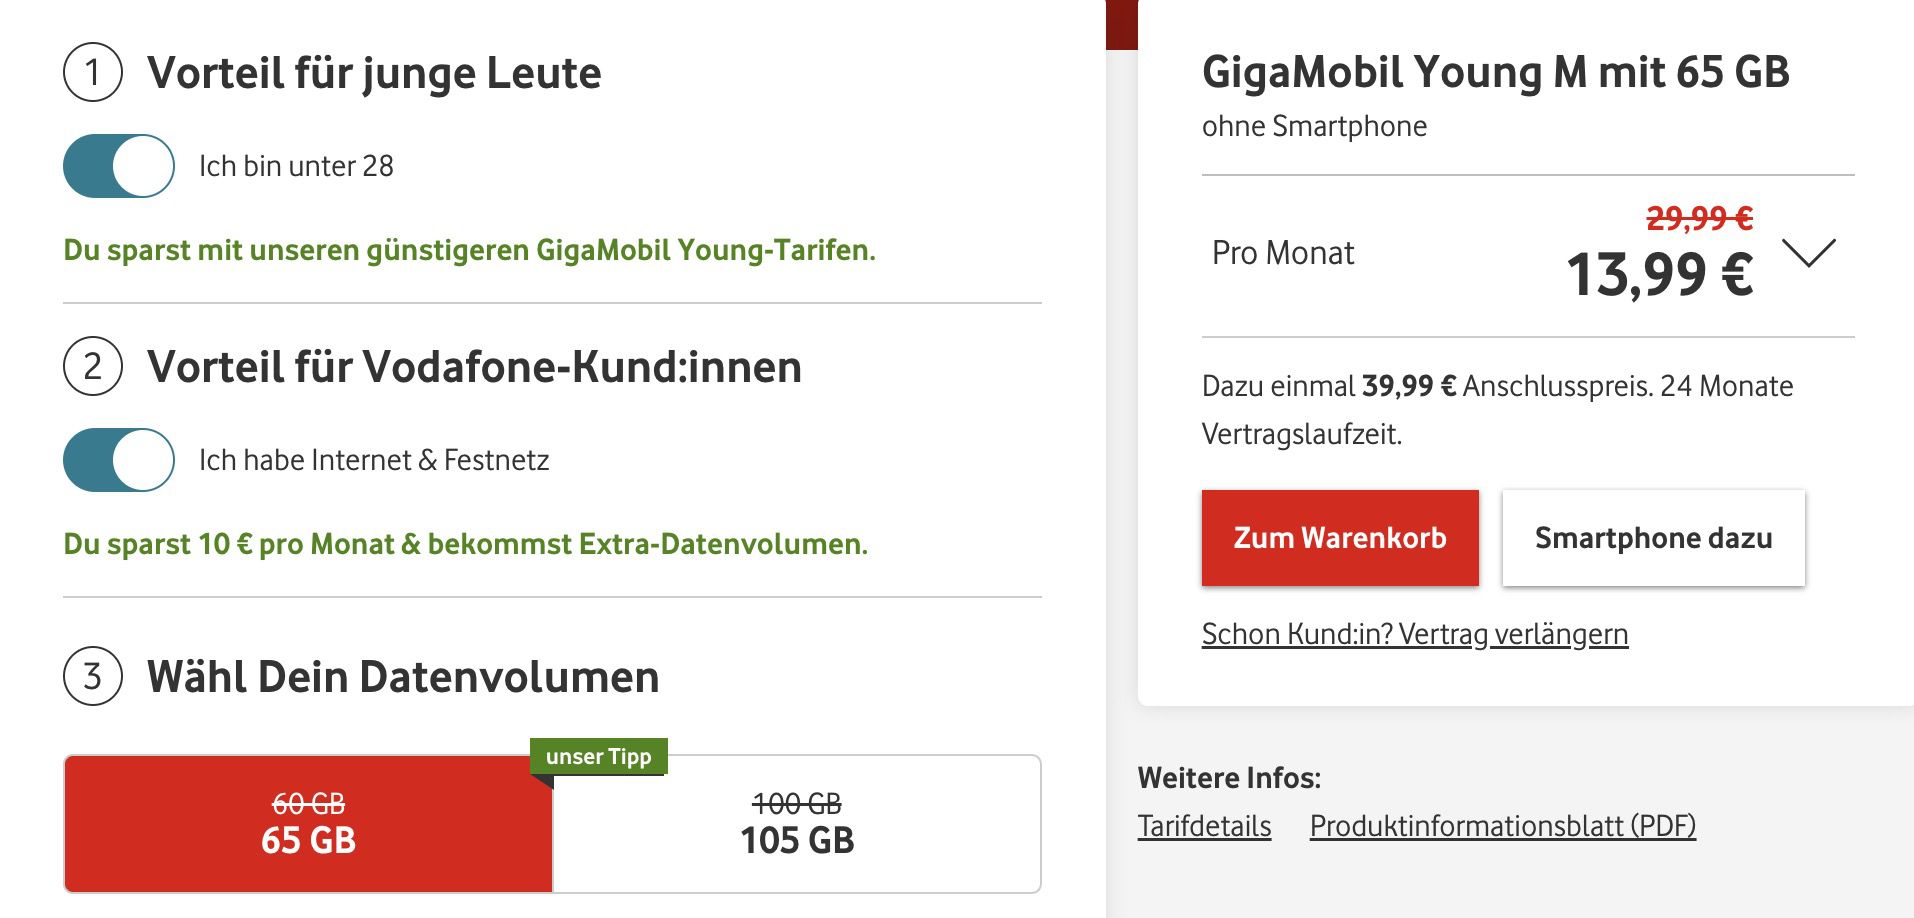 Junge Leute: Vodafone GigaMobil Young mit 60GB für 23,99€ mtl. oder mit 100GB für 30,39€ mtl.